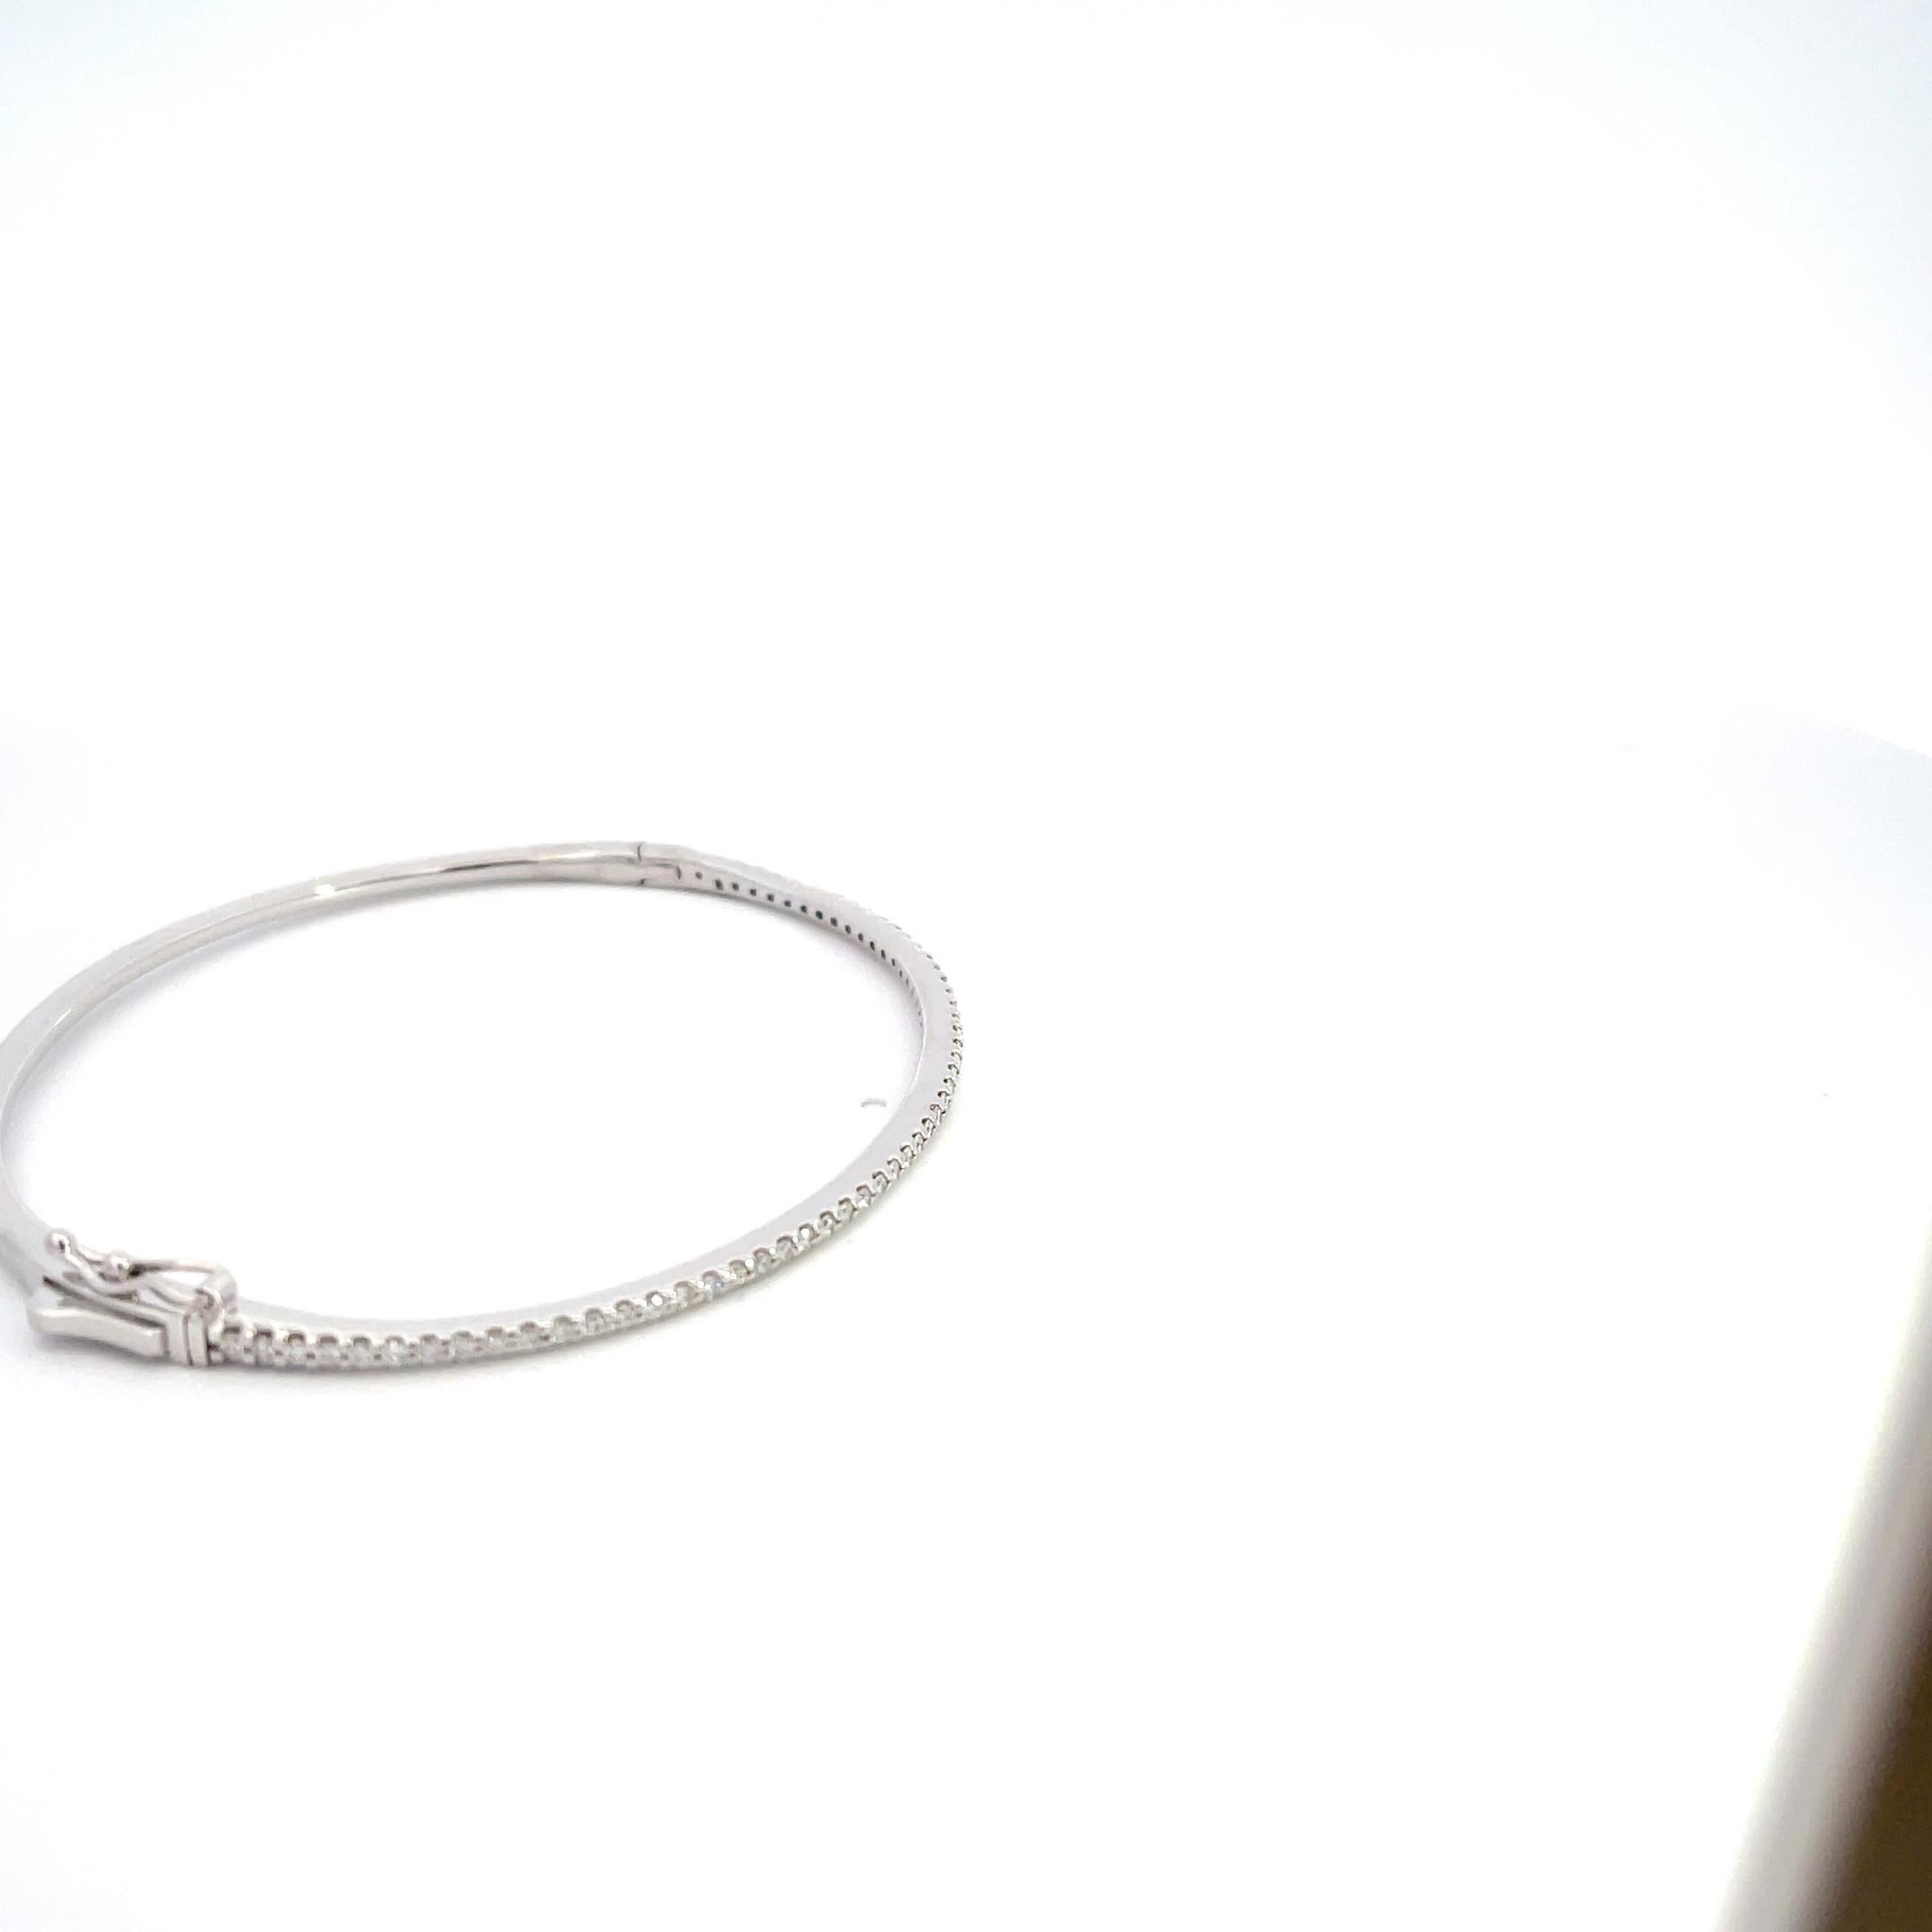 Whiting présente notre exquis bracelet en or blanc 14K avec 0,63ctw de diamant - un chef-d'œuvre intemporel qui allie sans effort sophistication et luxe. Fabriqué avec une attention méticuleuse aux détails, ce bracelet est un véritable symbole